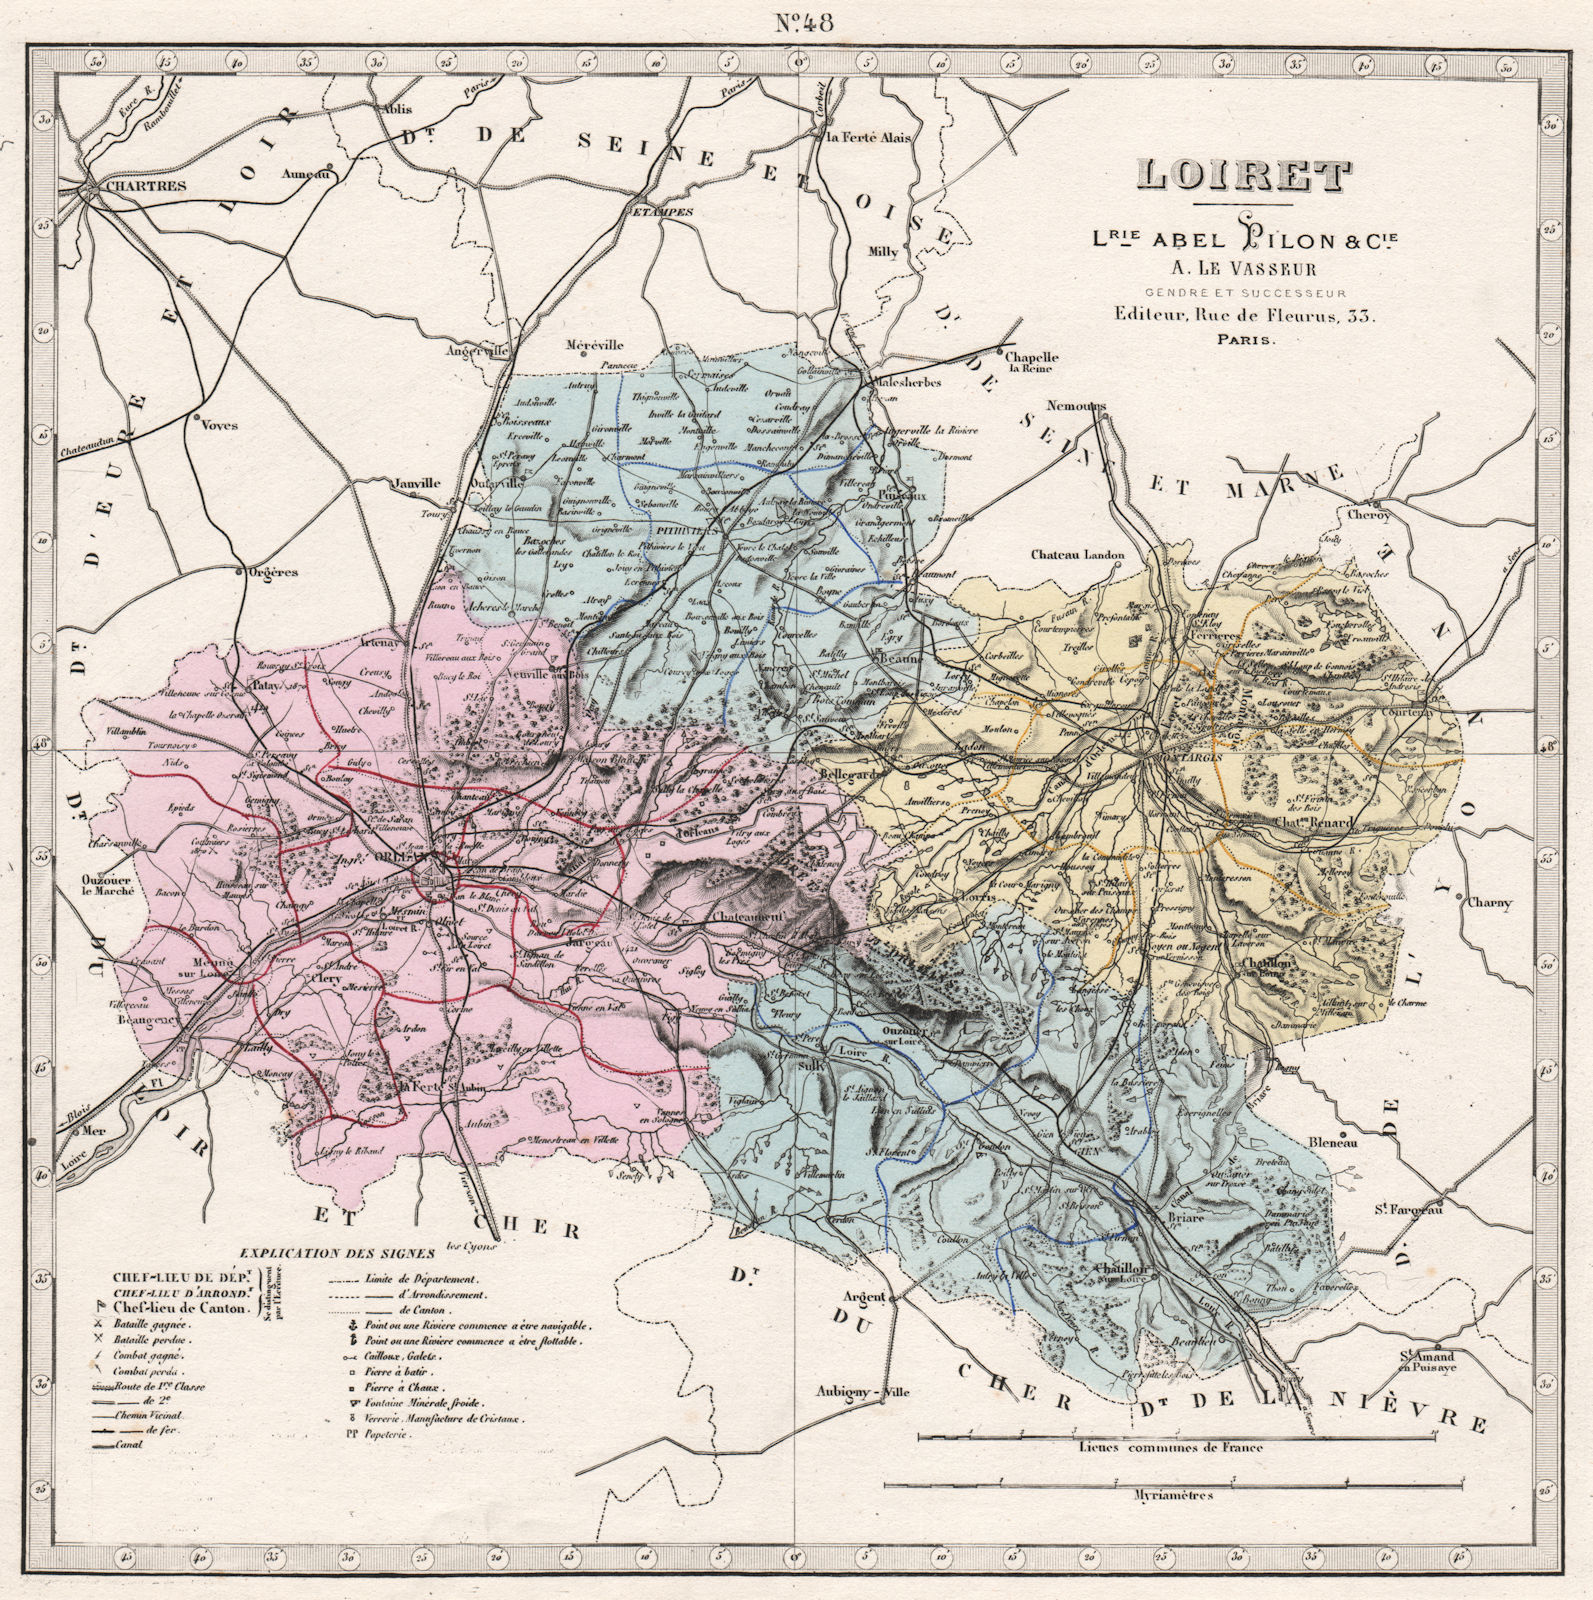 LOIRET department. Battlefields/dates, resources & minerals. LE VASSEUR 1876 map